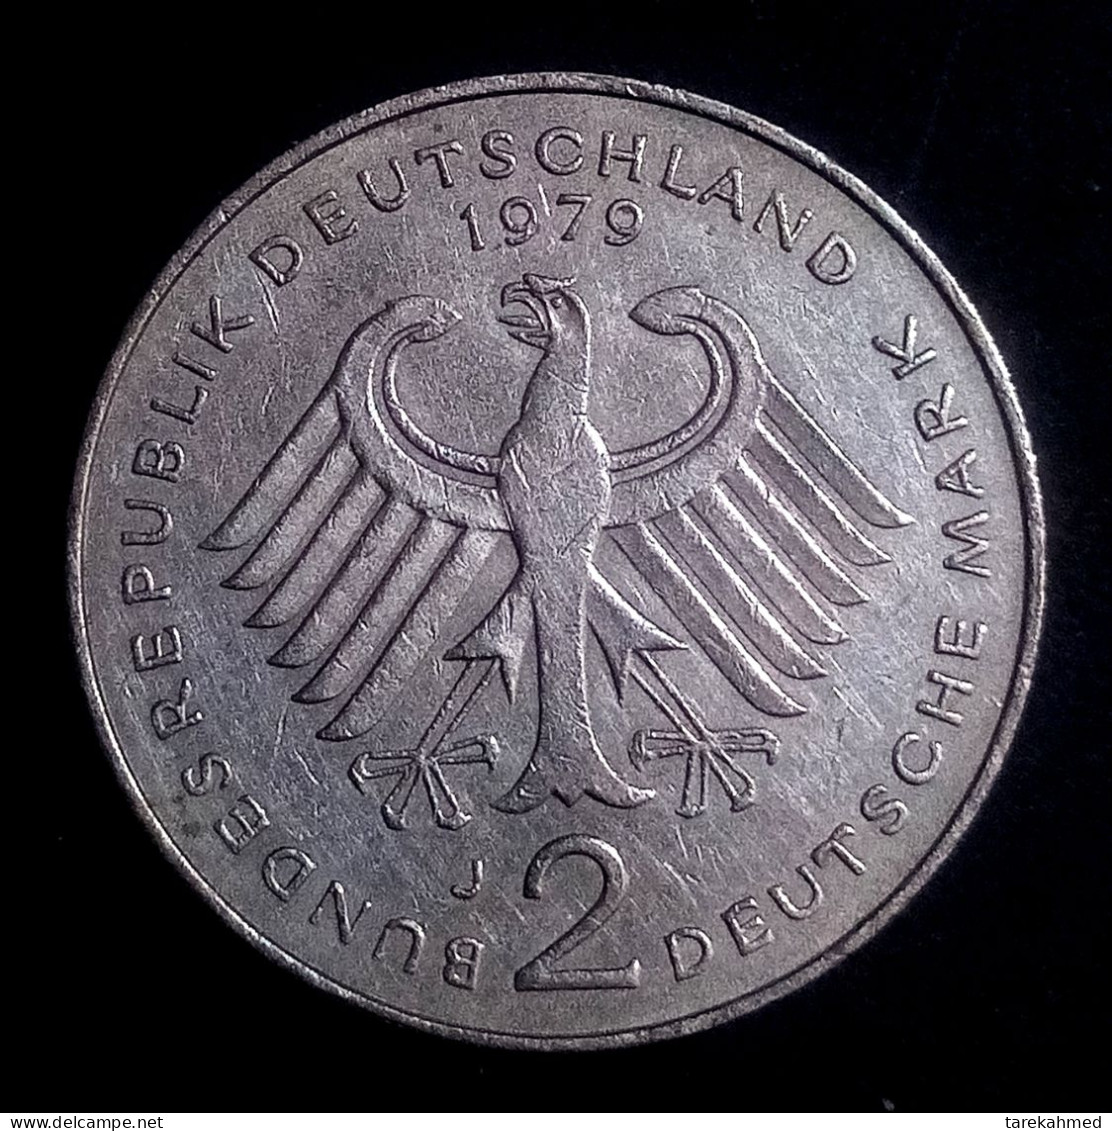 GERMANY, 2 MARK, 1979 J, Karlsruhe, THEODOR HEUSS, KM#124 ، Agouz - 2 Mark